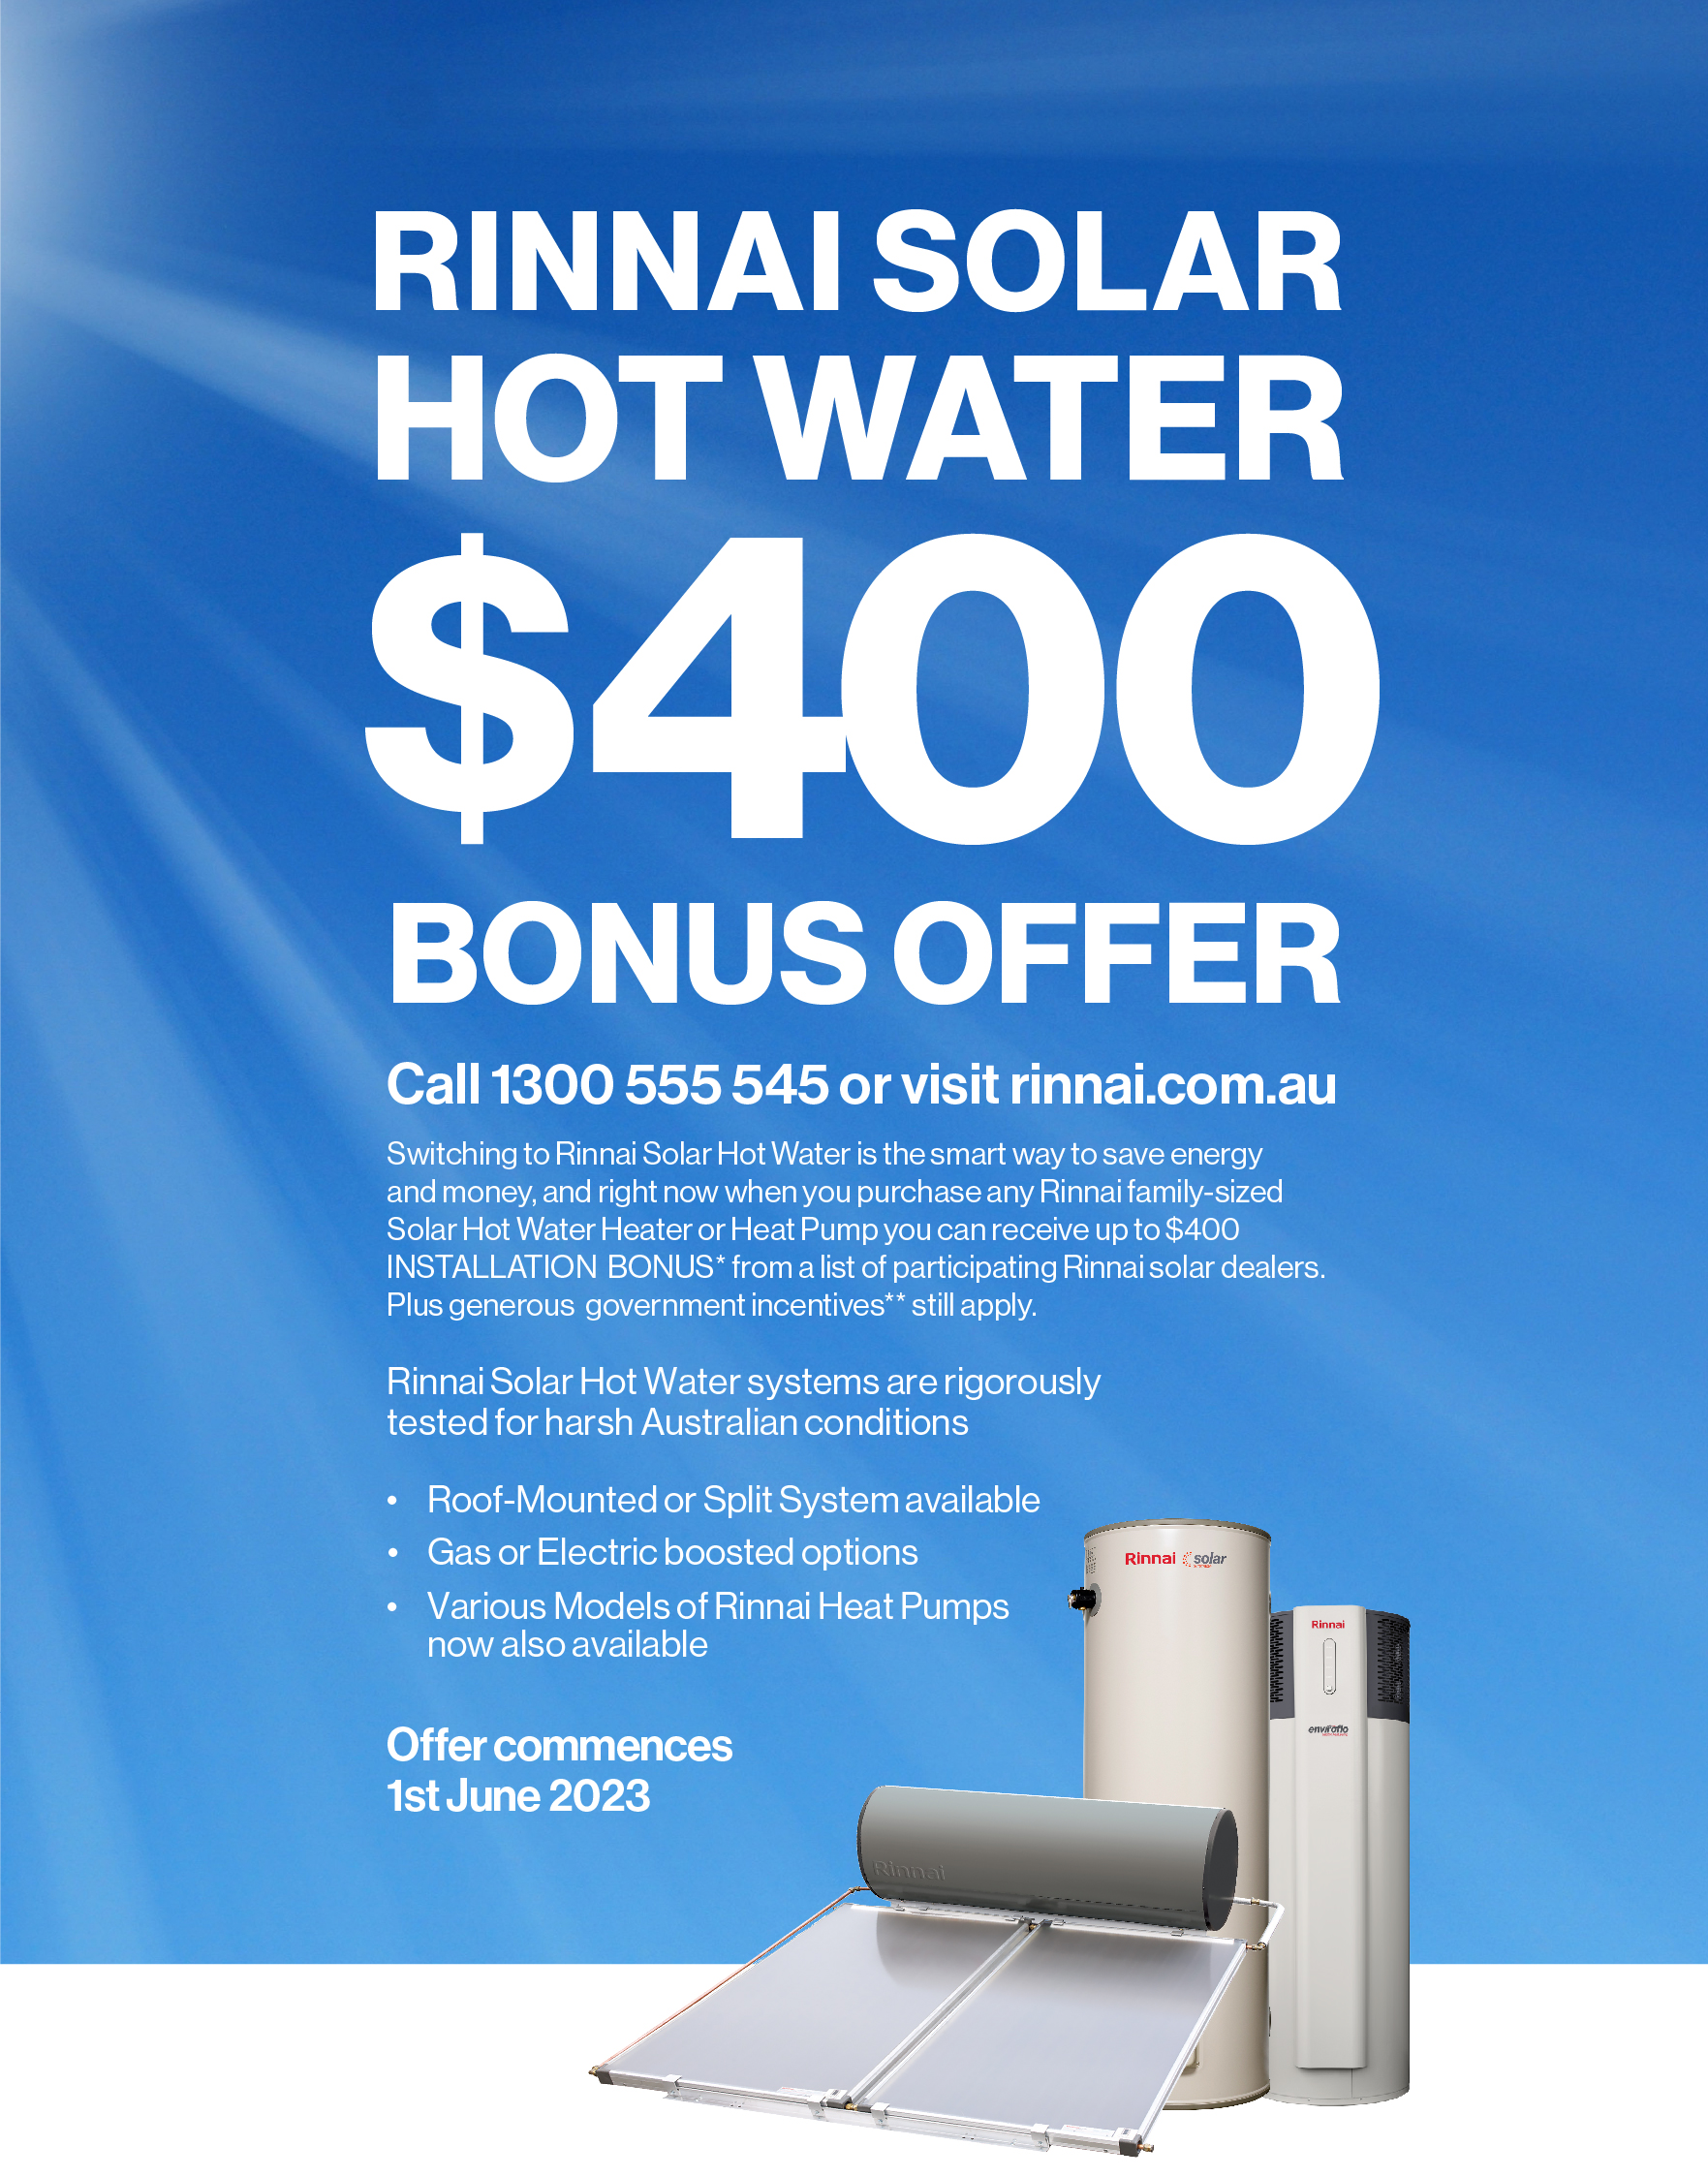 solar-hot-water-400-bonus-offer-rinnai